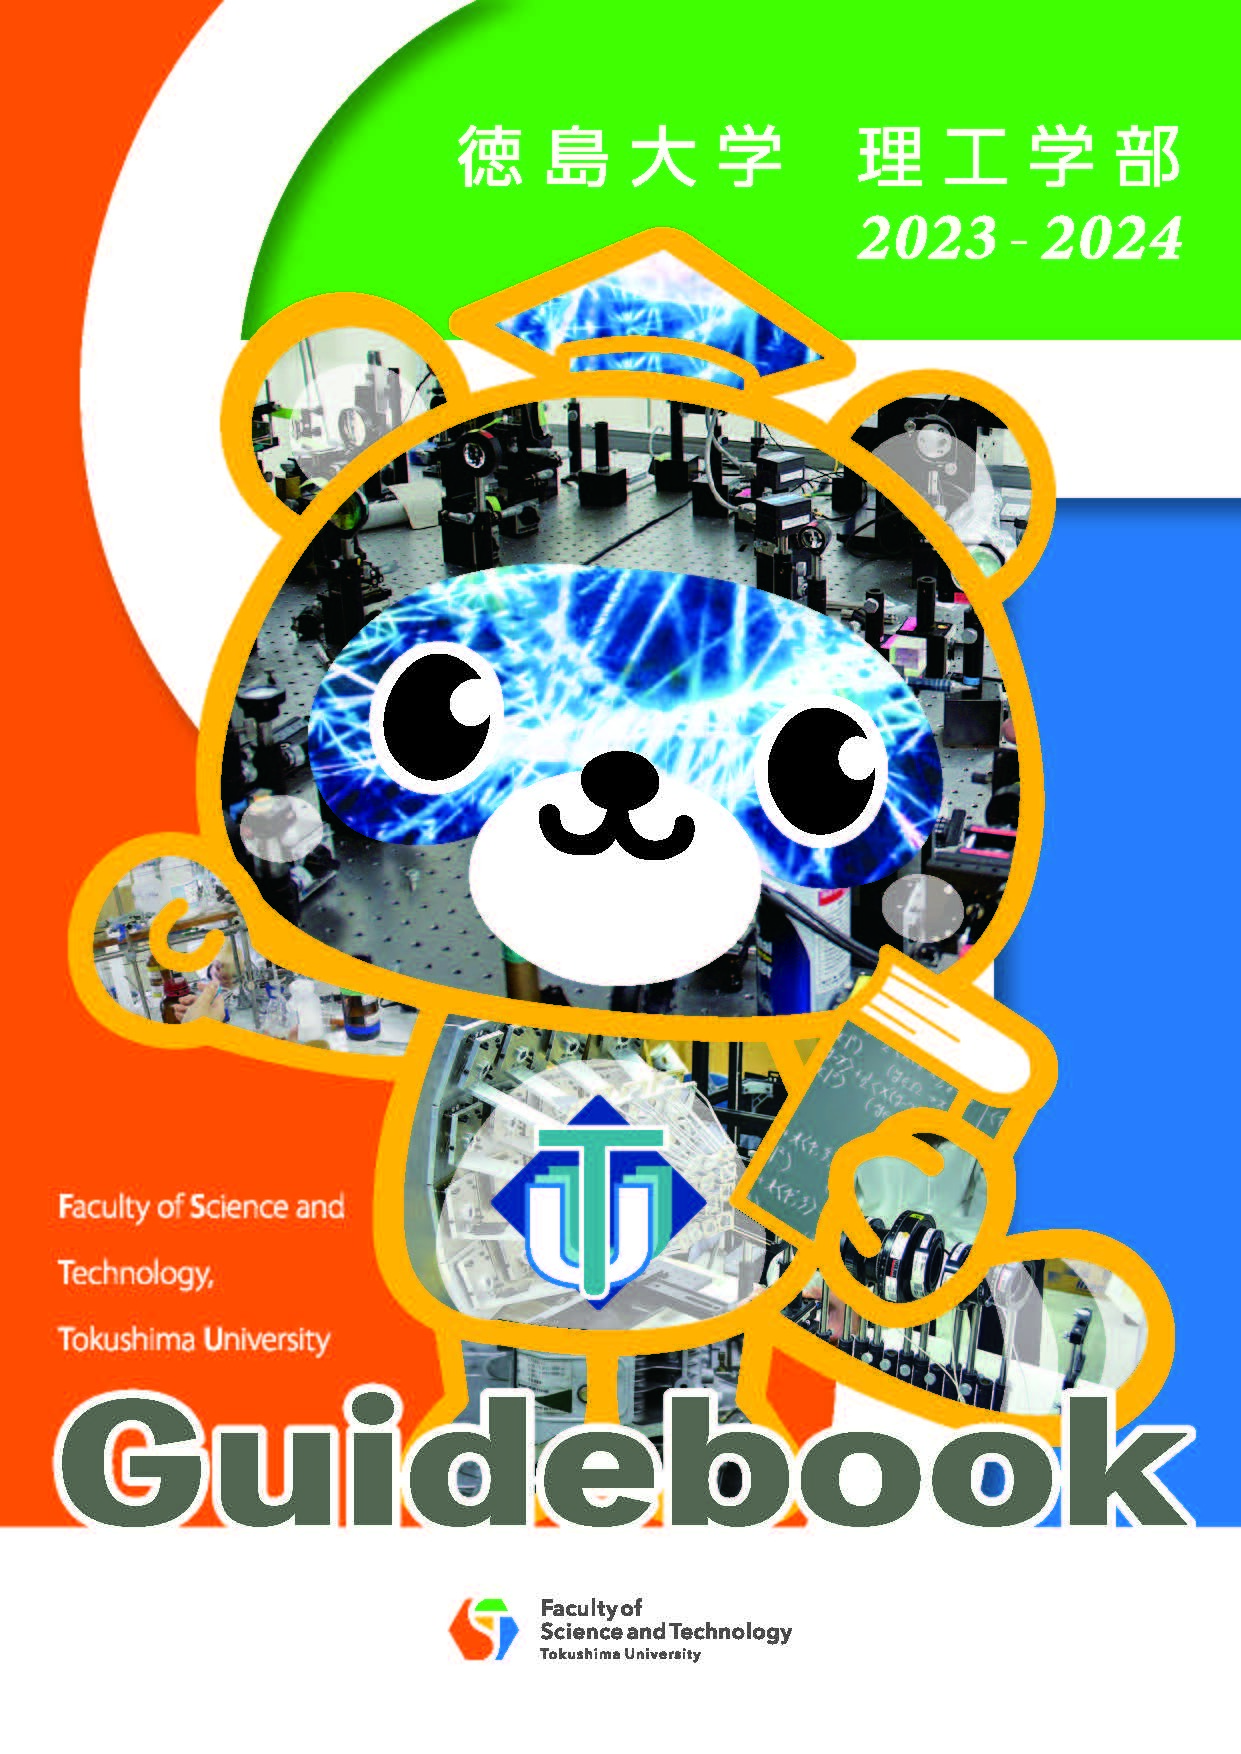 guidebook2023-2024.jpg